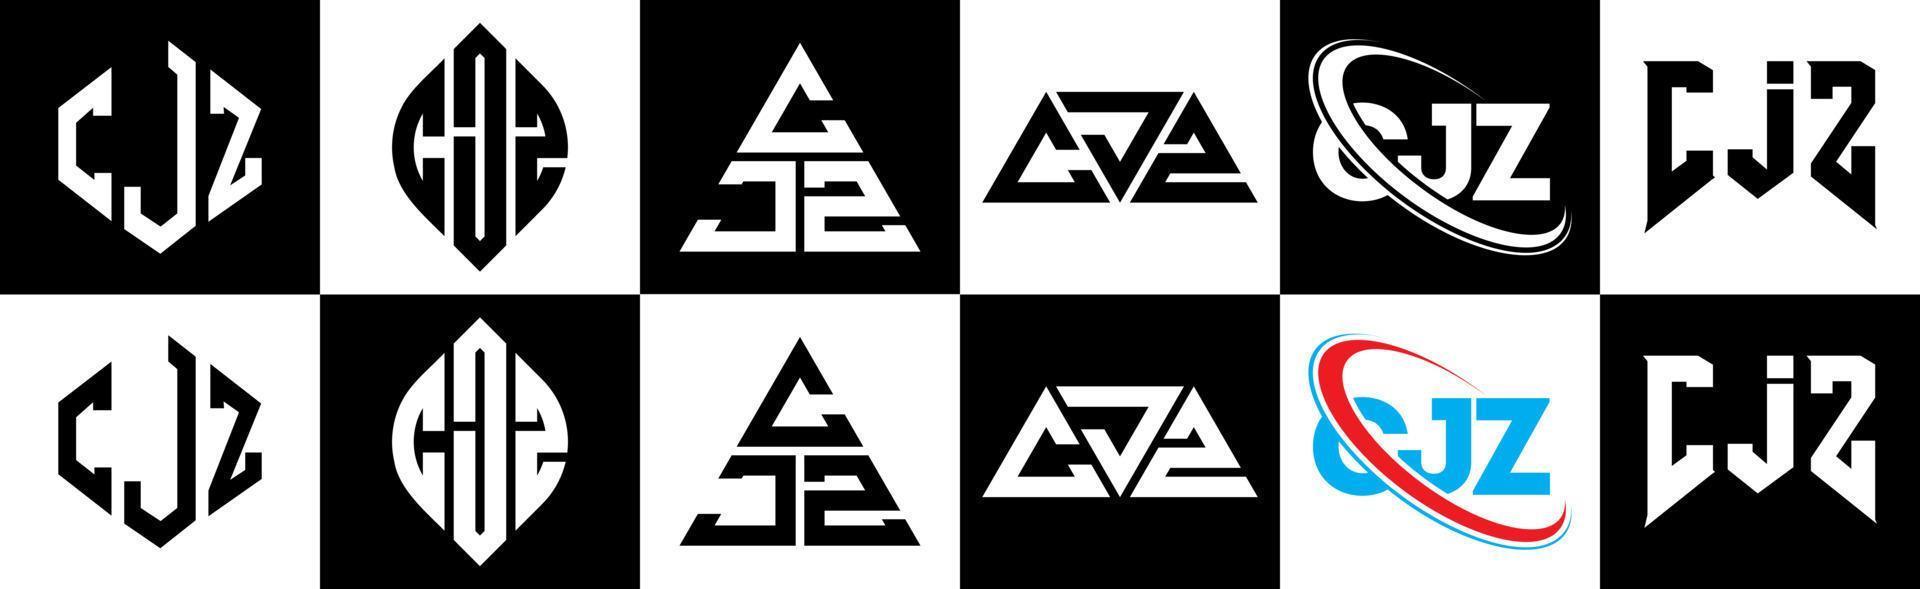 création de logo de lettre cjz en six styles. cjz polygone, cercle, triangle, hexagone, style plat et simple avec logo de lettre de variation de couleur noir et blanc dans un plan de travail. cjz logo minimaliste et classique vecteur